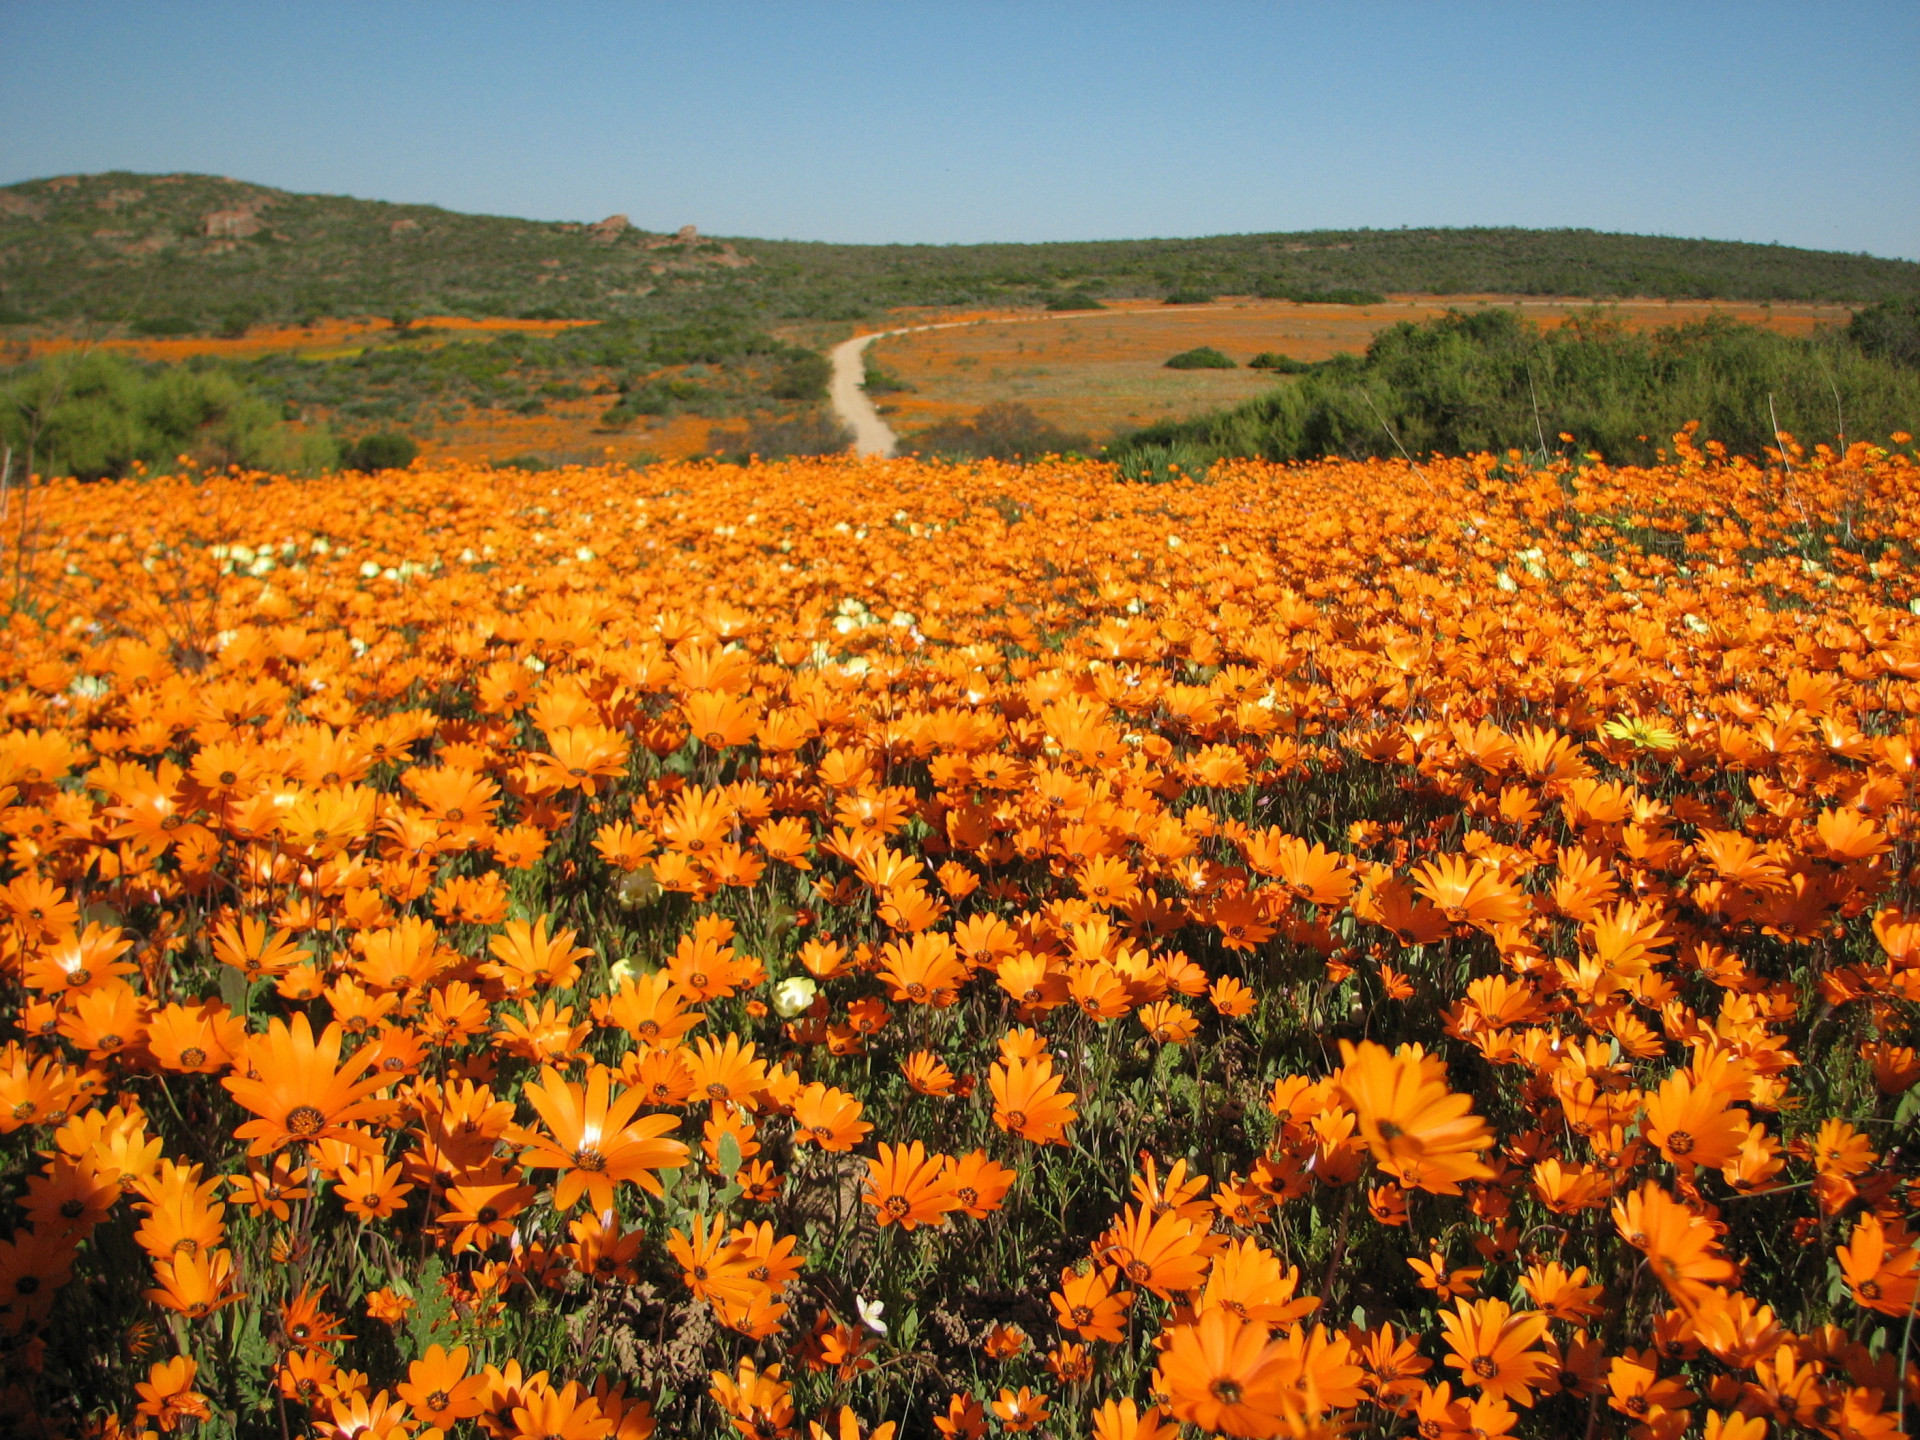 Skilpad Wildflower Reserve, située dans le parc national de Namaqua, est connue pour ses merveilleuses fleurs sauvages de Namaqualand. La zone protégée a été créée en 1988.<p>Tu pourrais aussi aimer:<a href="https://www.starsinsider.com/n/384983?utm_source=msn.com&utm_medium=display&utm_campaign=referral_description&utm_content=314472v3"> 30 destinations secrètes où faire trempette </a></p>